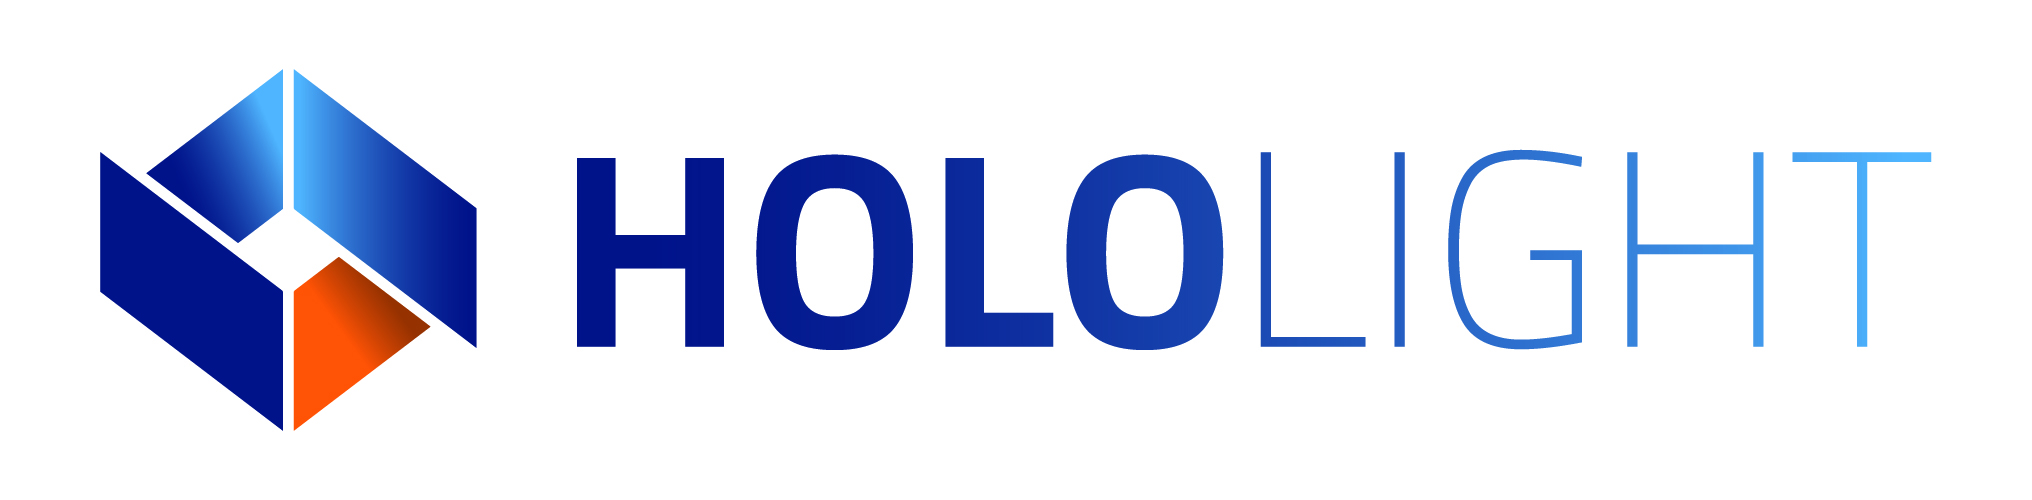 Hololight Logo